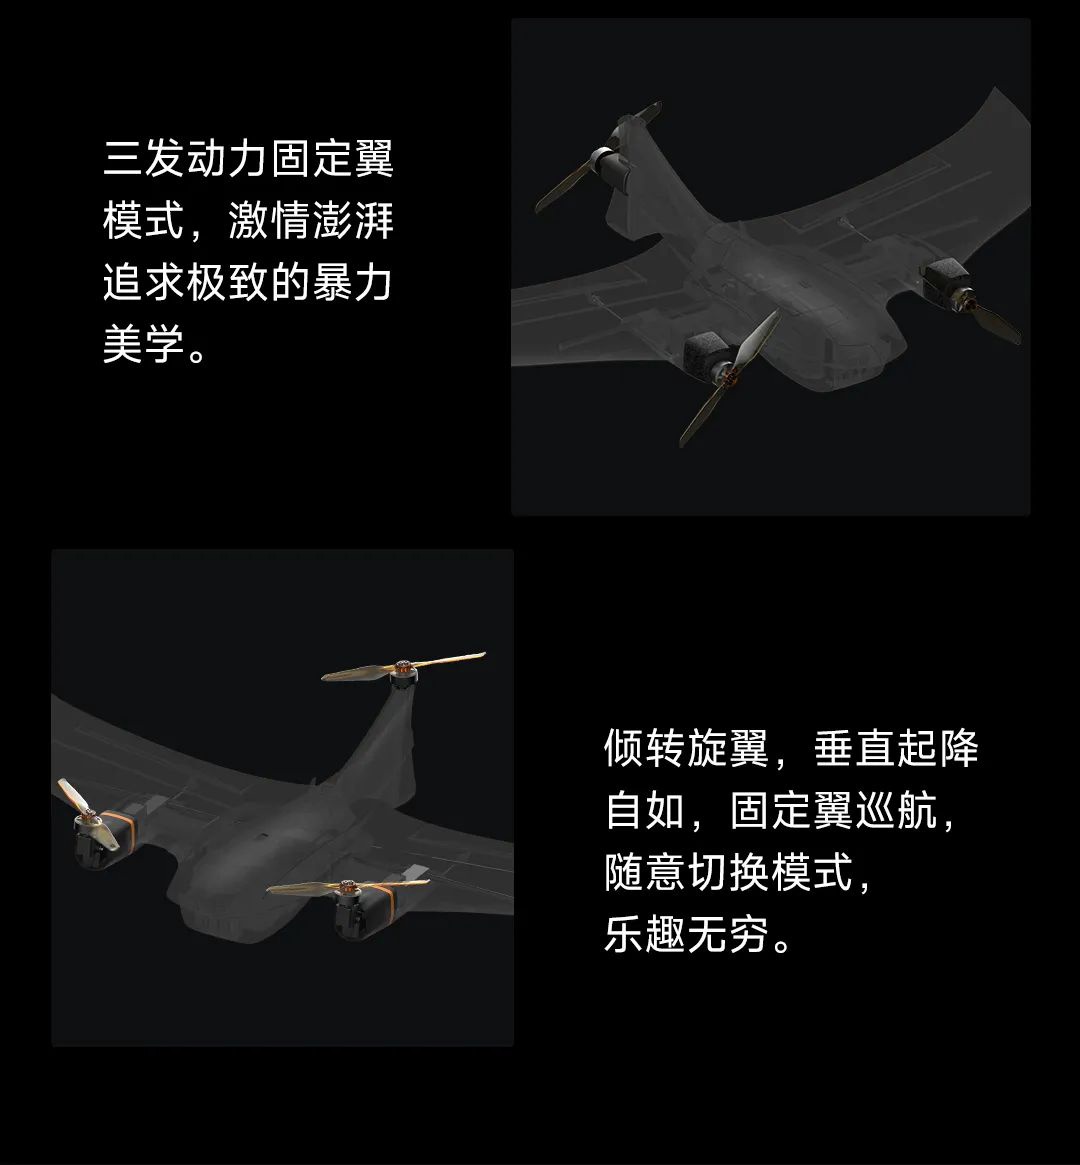 799 元，小米生态飞米 Manta 垂直起降固定翼无人机发布：续航 85 分钟